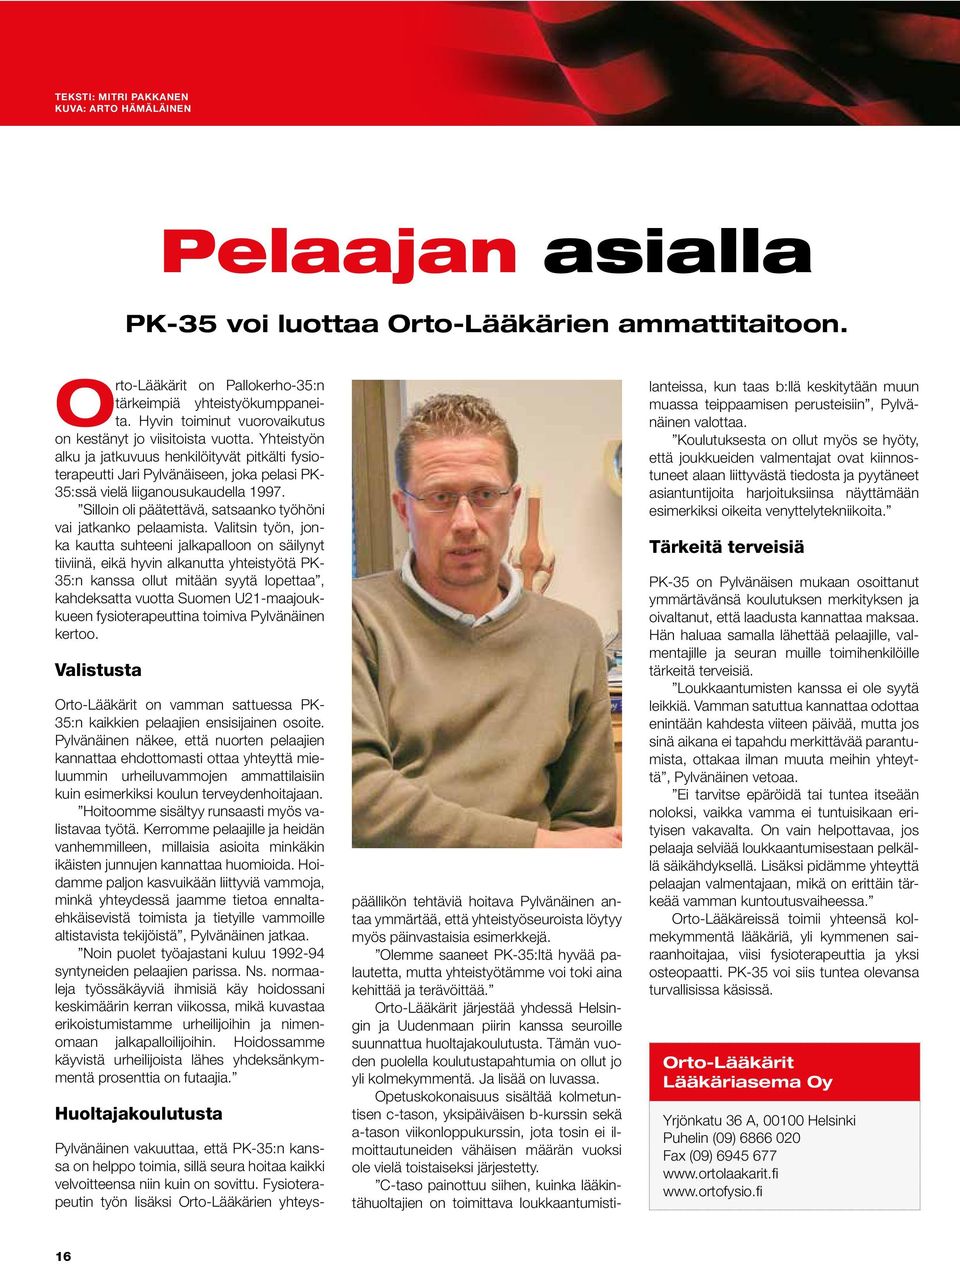 Yhteistyön alku ja jatkuvuus henkilöityvät pitkälti fysioterapeutti Jari Pylvänäiseen, joka pelasi PK- 35:ssä vielä liiganousukaudella 1997.